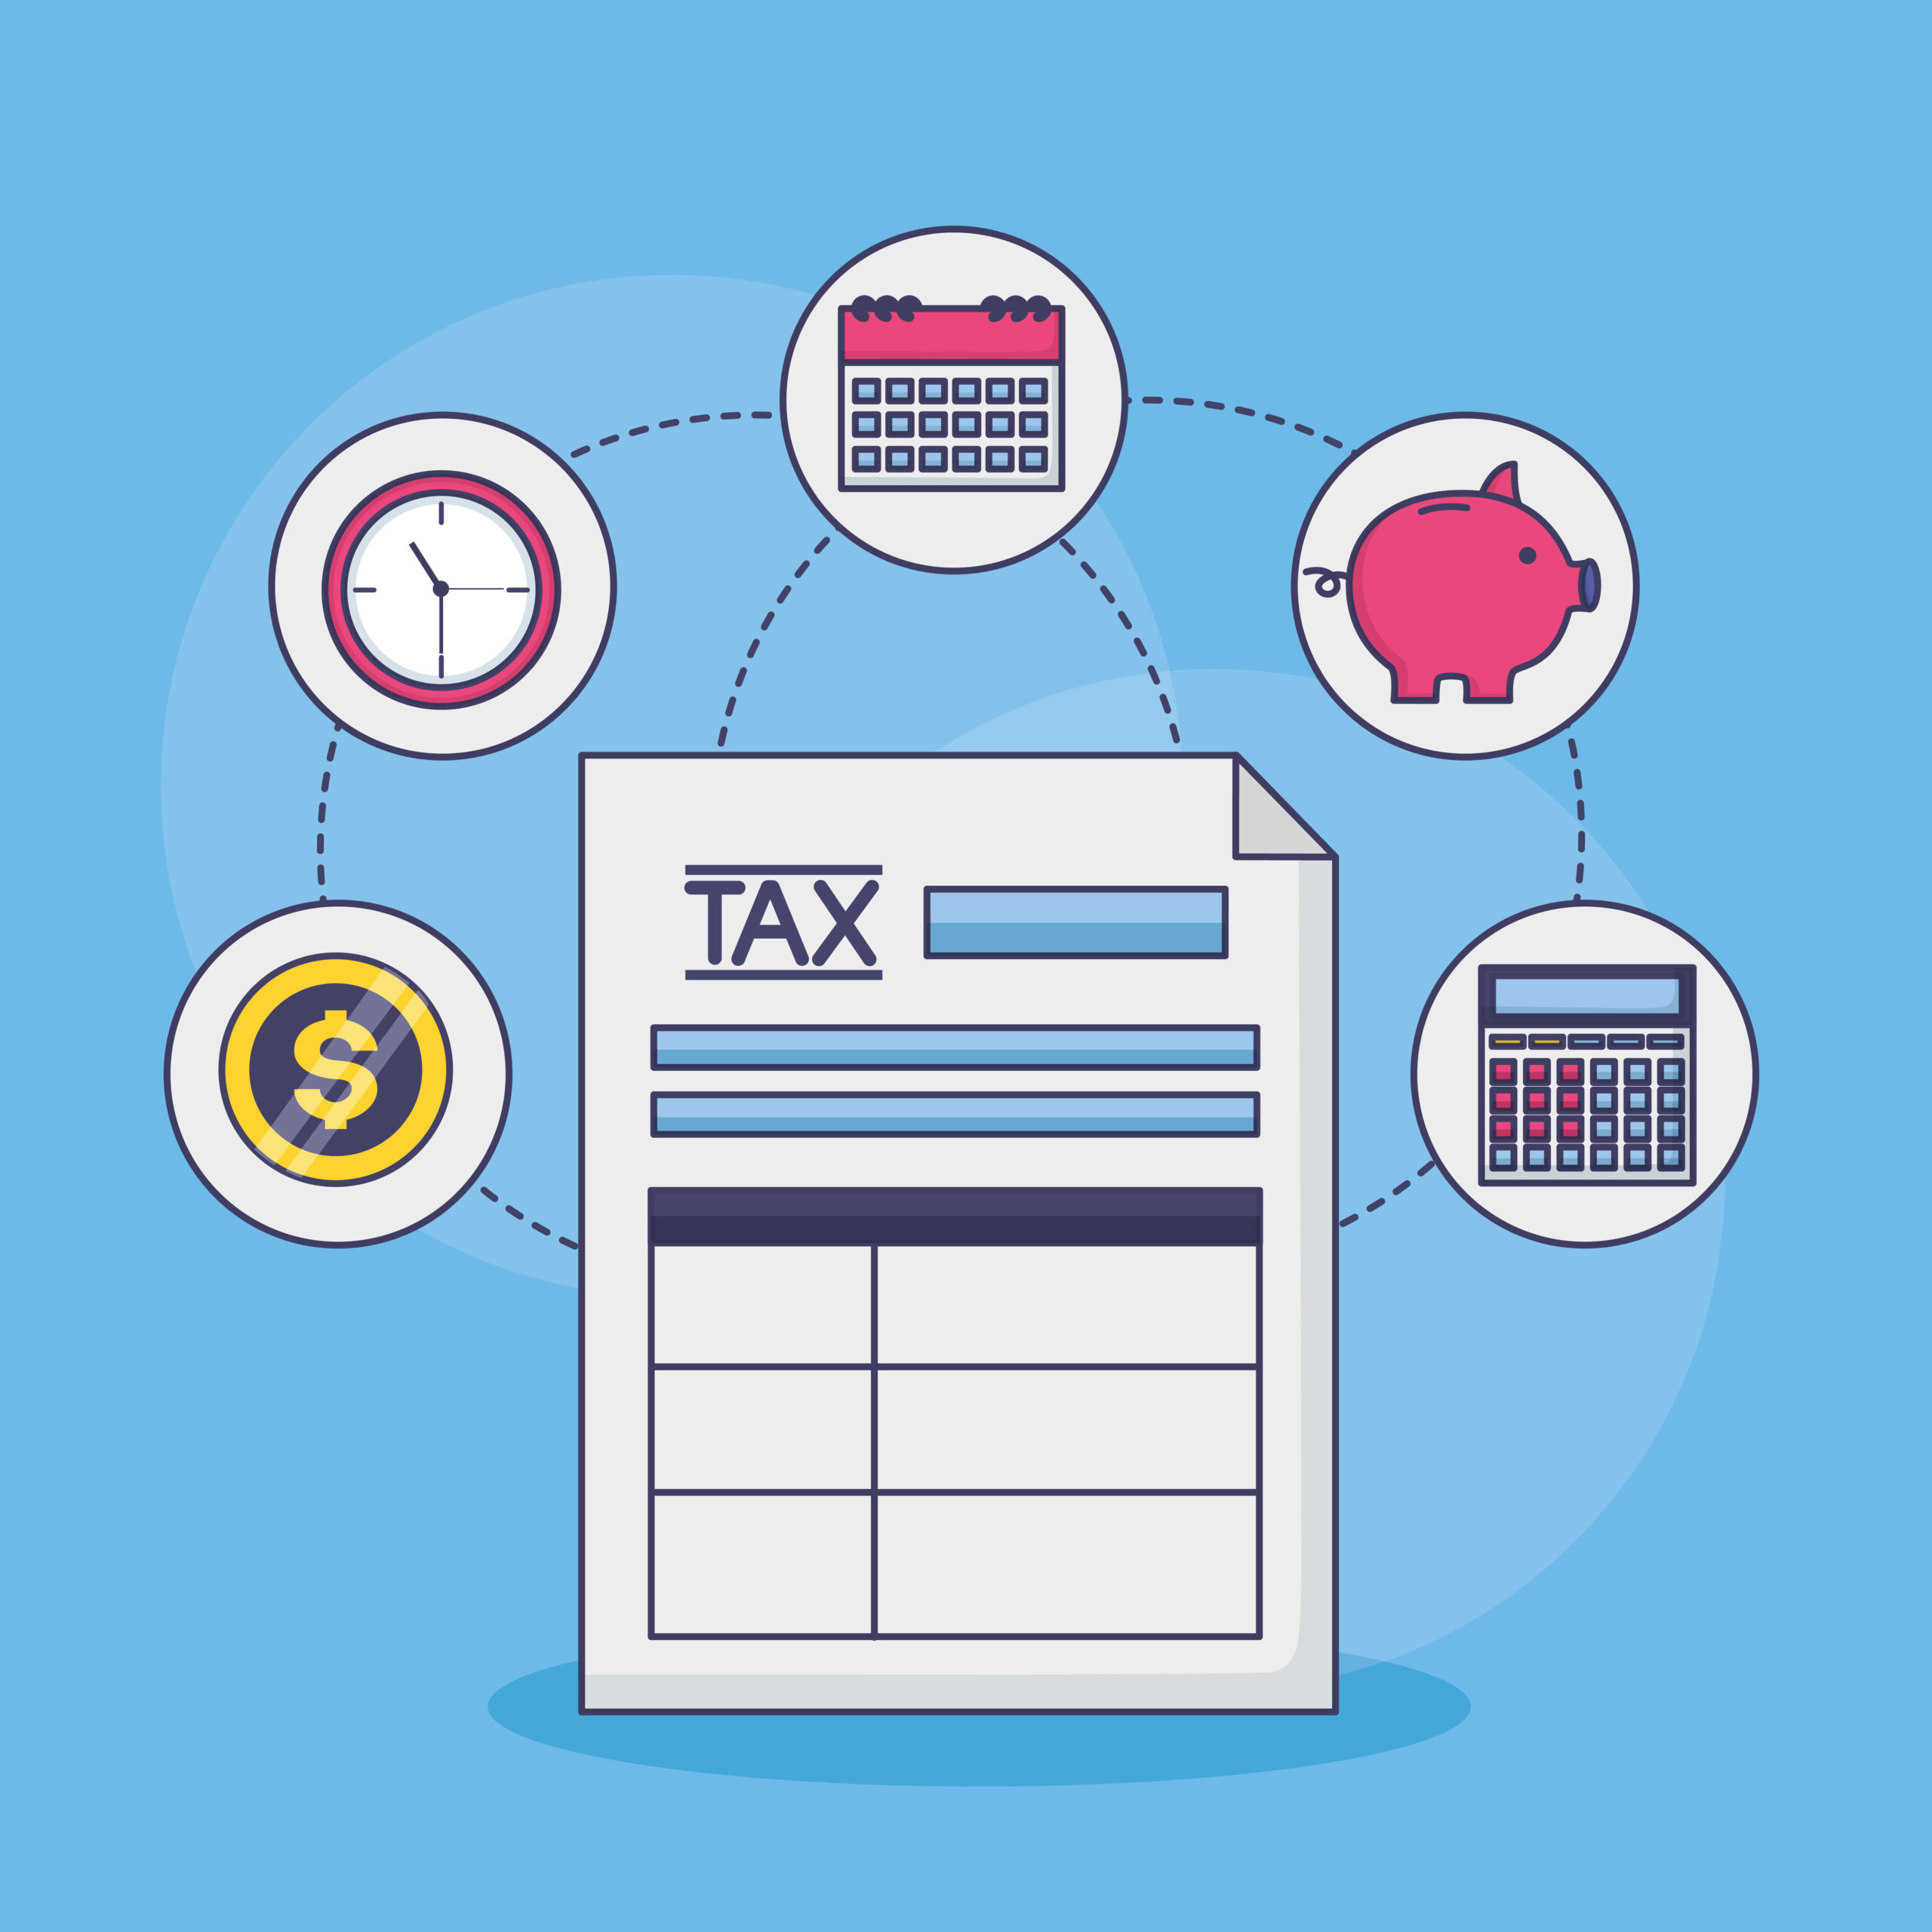 income tax calculator